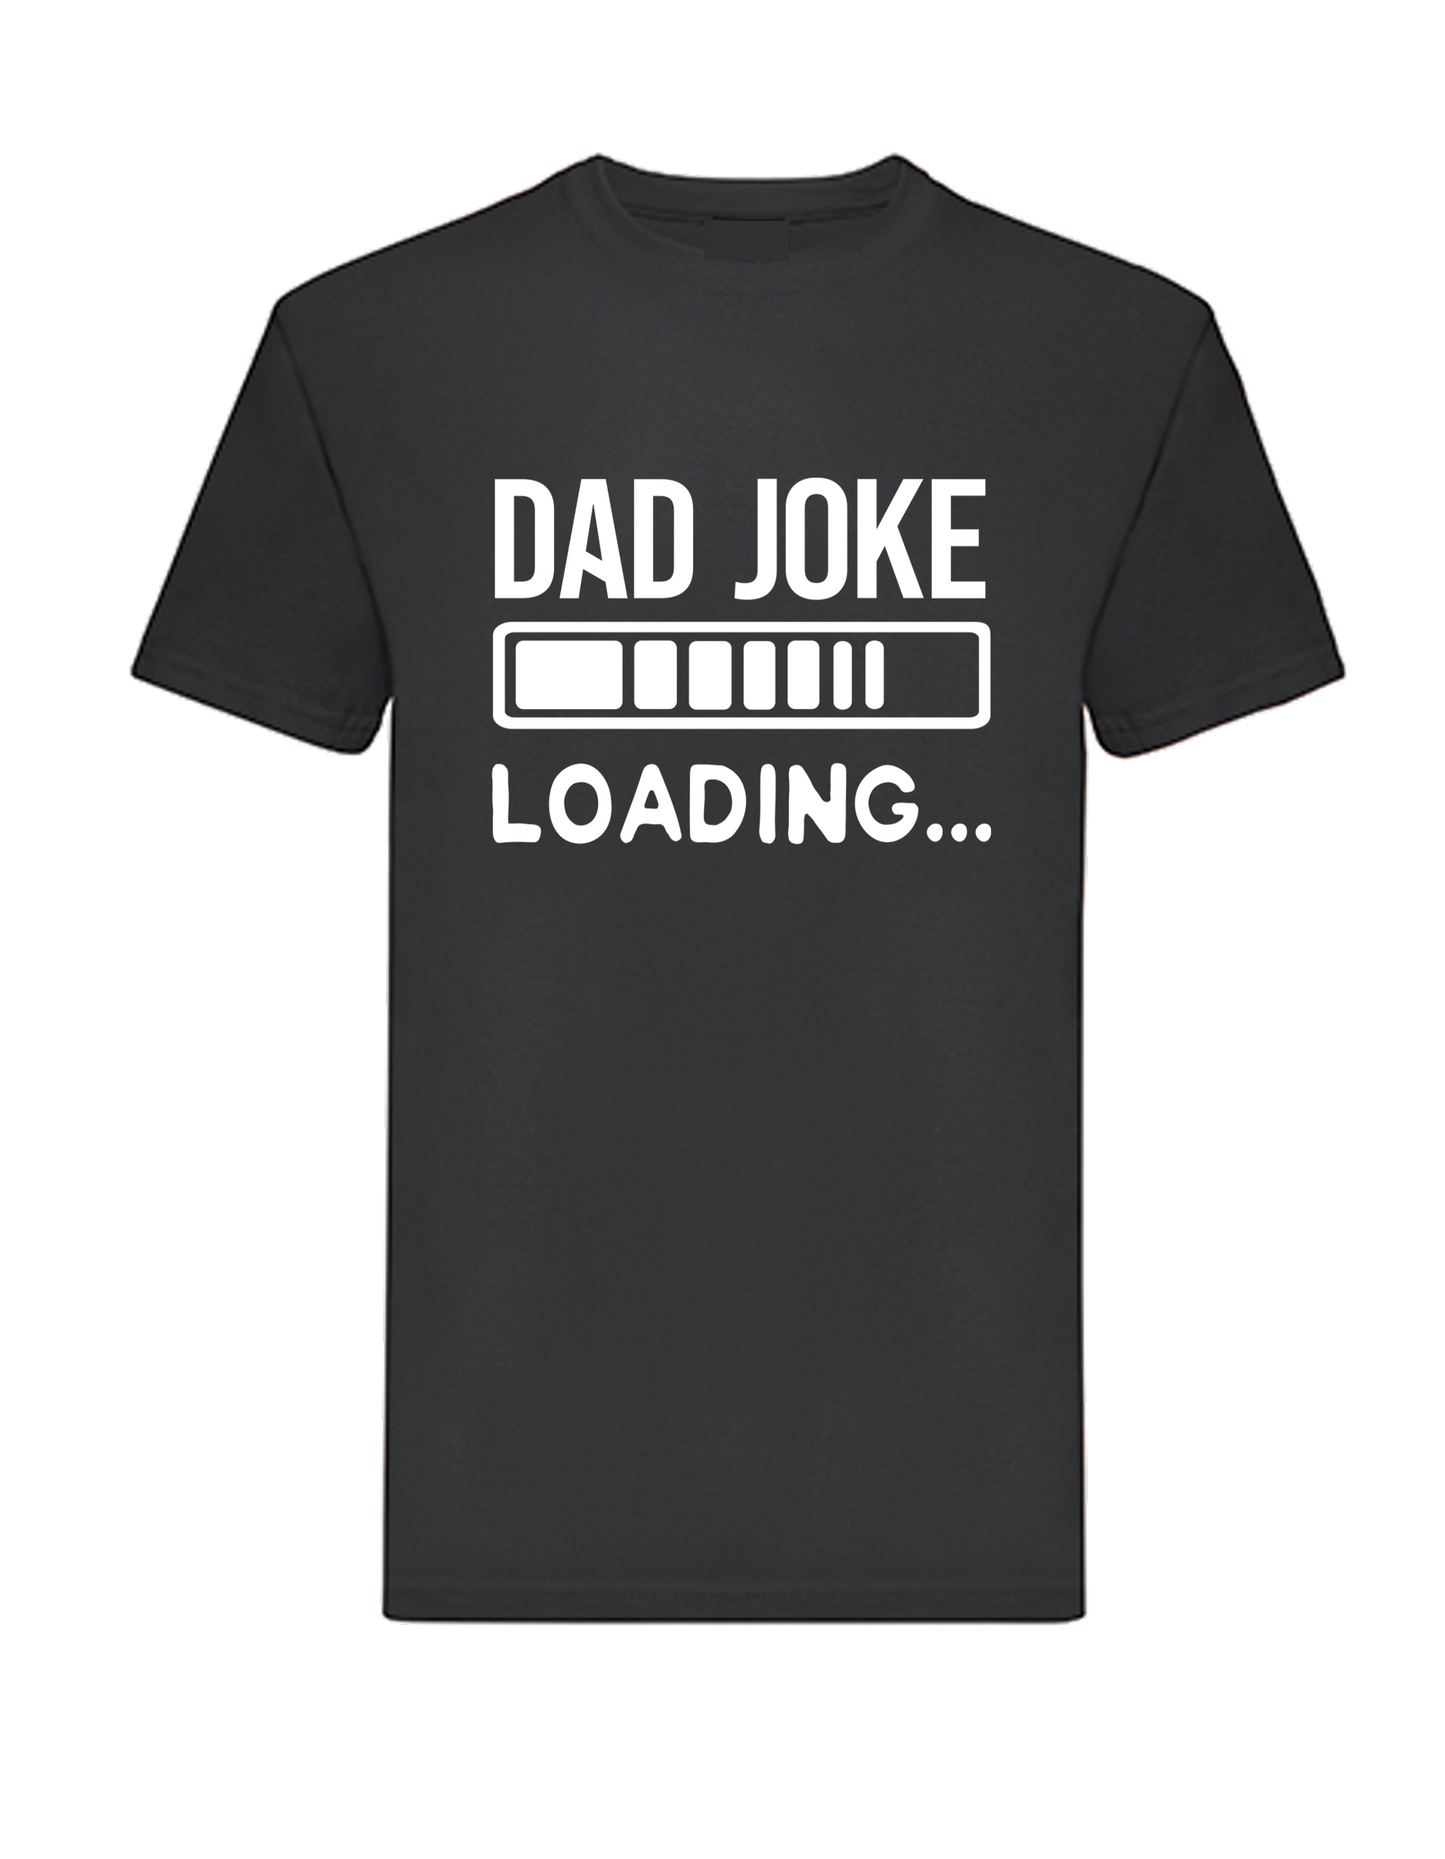 Dad joke loading